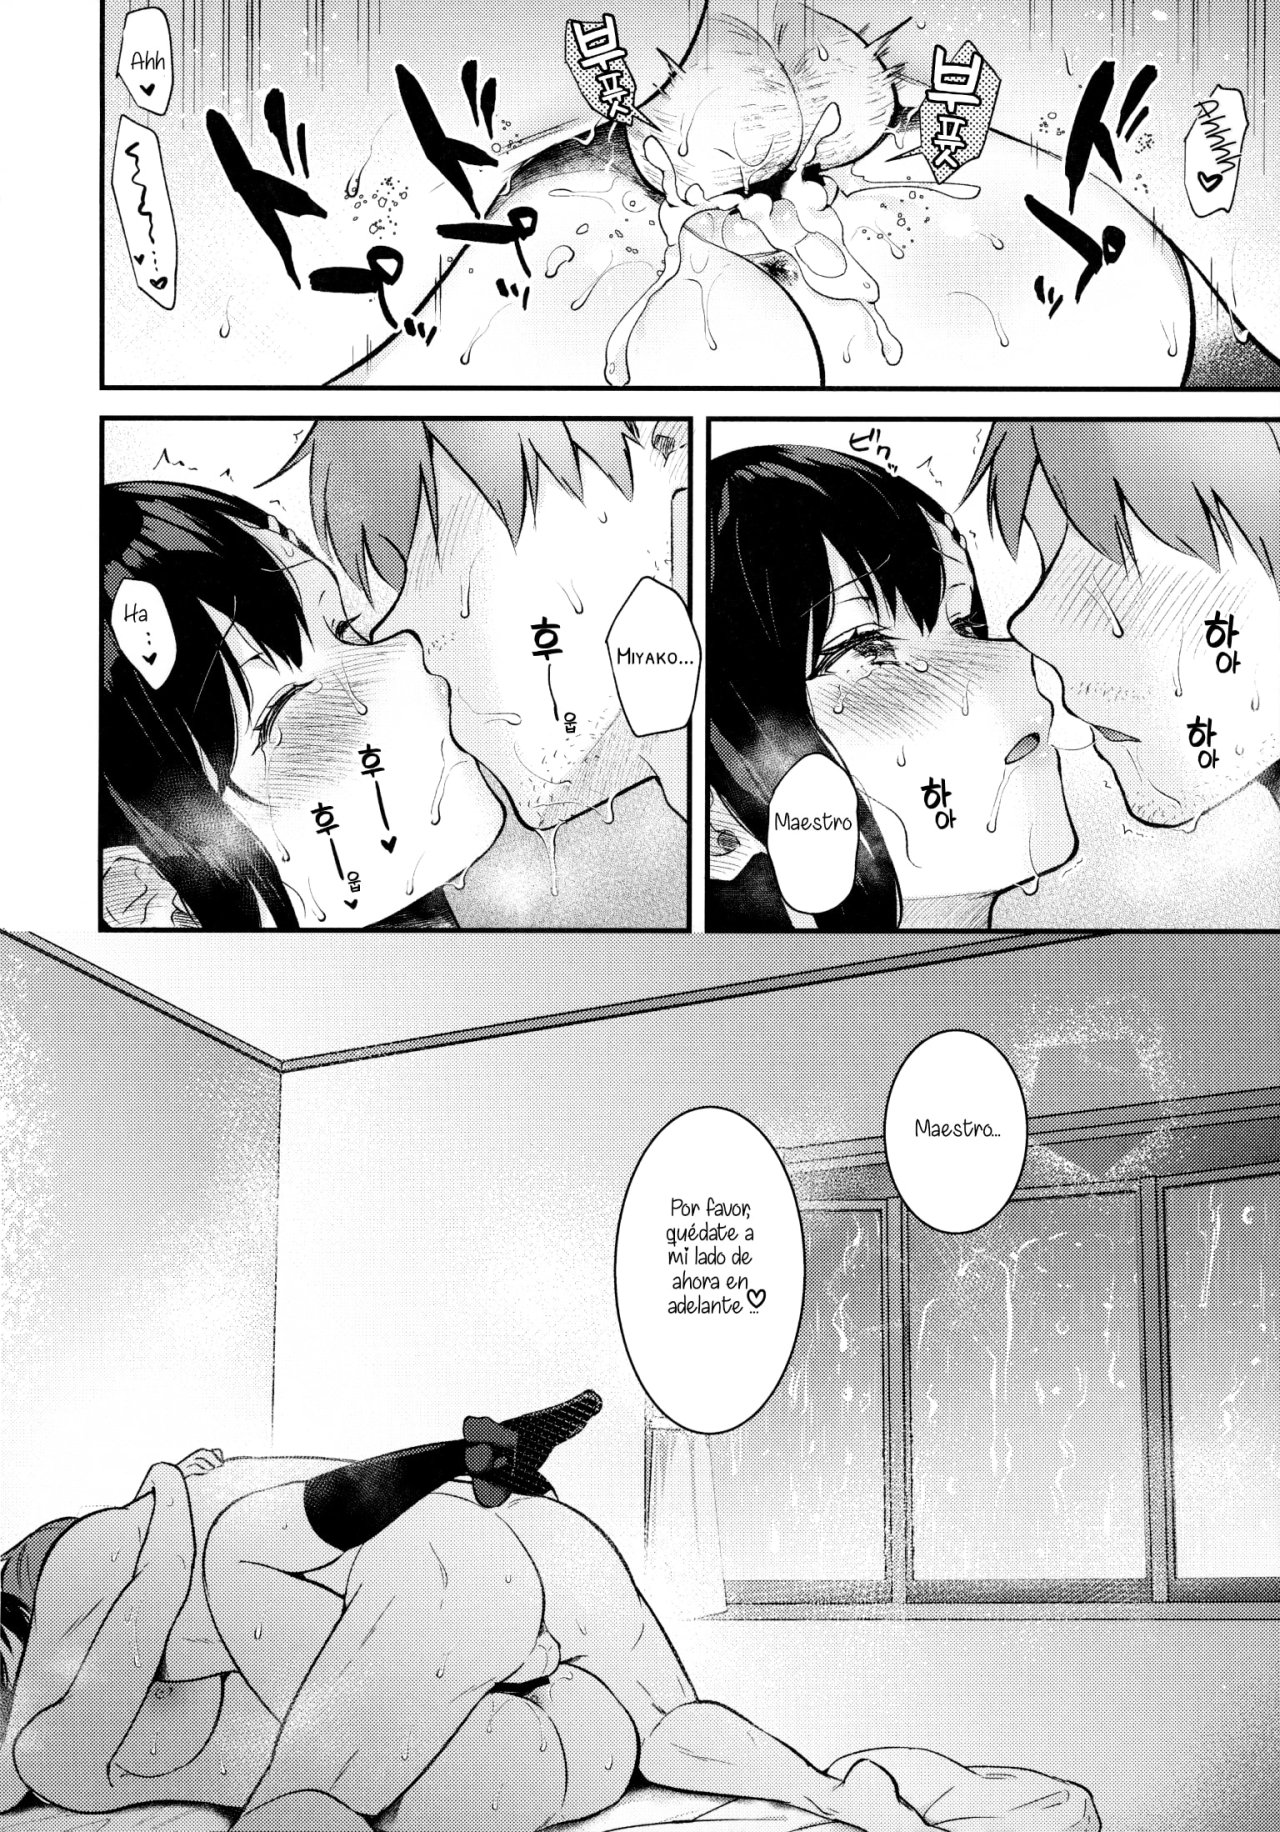 Sunshower-JK Miyako no Valentine Manga 3 - 40